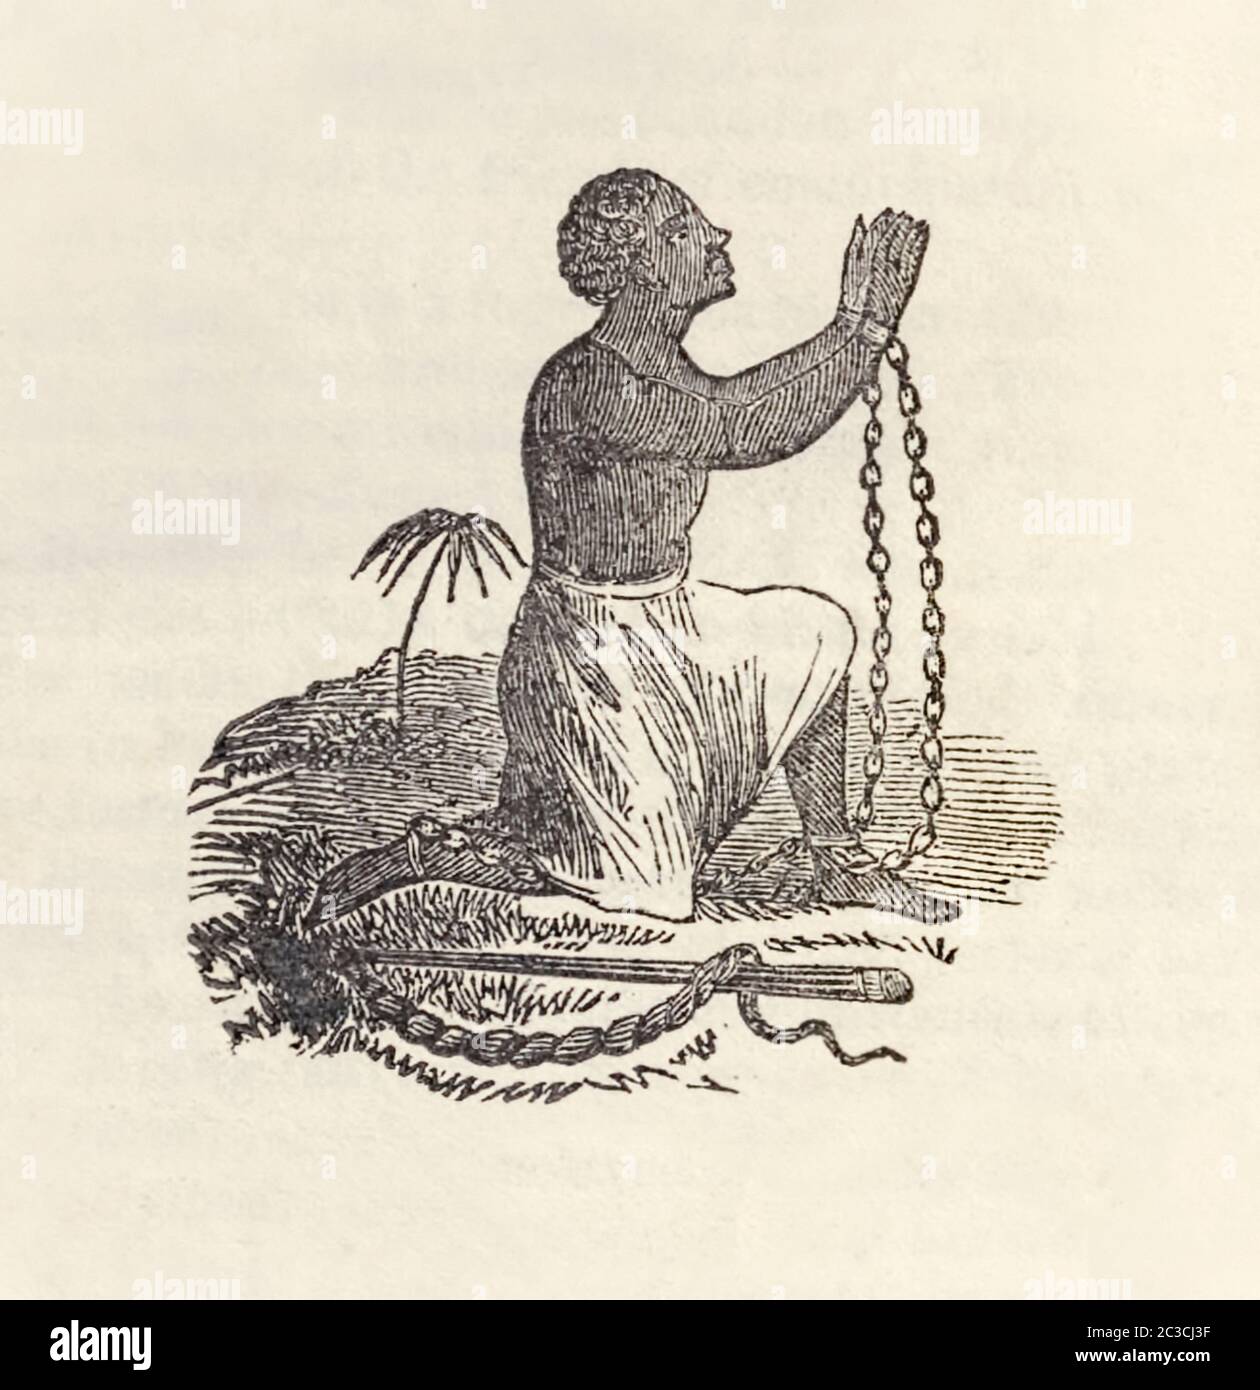 Arrodillada emblema de esclavo de la Sociedad contra la Esclavitud, mostrando un esclavo africano manacrado que suplicaba ser puesto libre junto a él se encuentra un látigo que simboliza la opresión subhumana que los esclavos tenían que soportar. Ilustración de la narración de William W. Brown, un esclavo fugitivo, escrita por él mismo, por William Wells Brown (c.1814-1884). Foto de stock